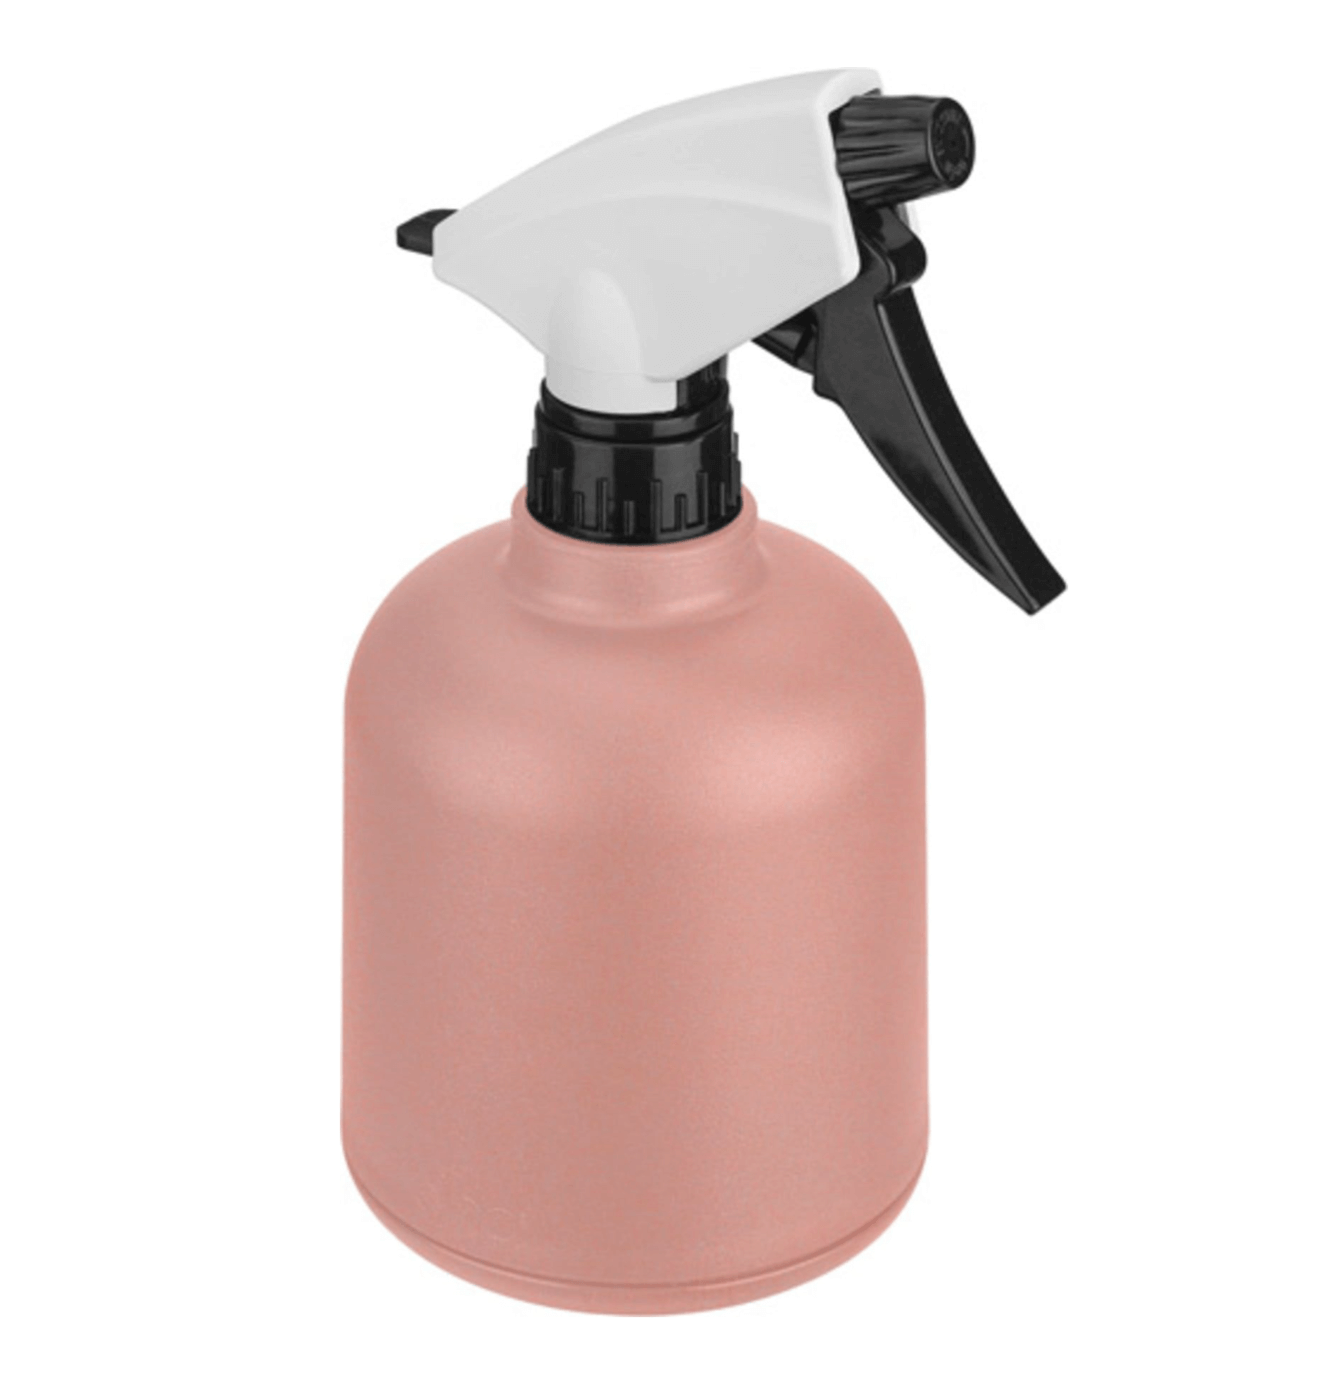 B.For soft sprayer/Pink